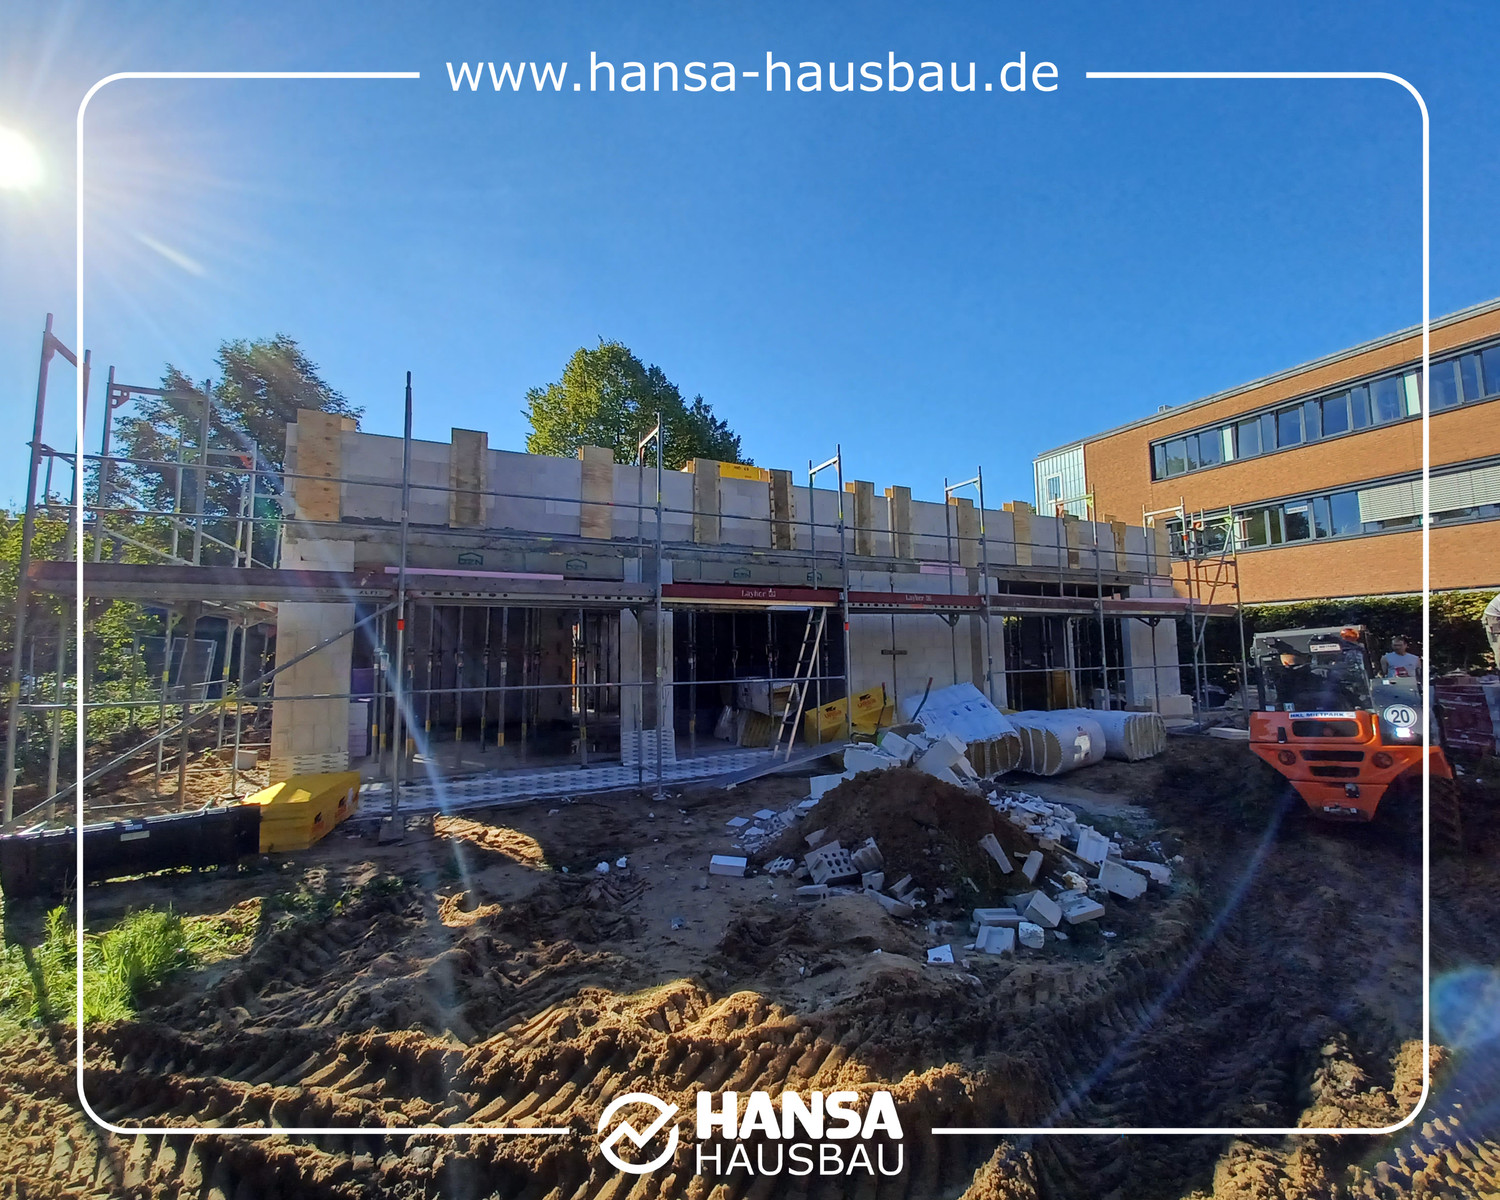 Hansa Hausbau Drempel Neubau Hanburg 04